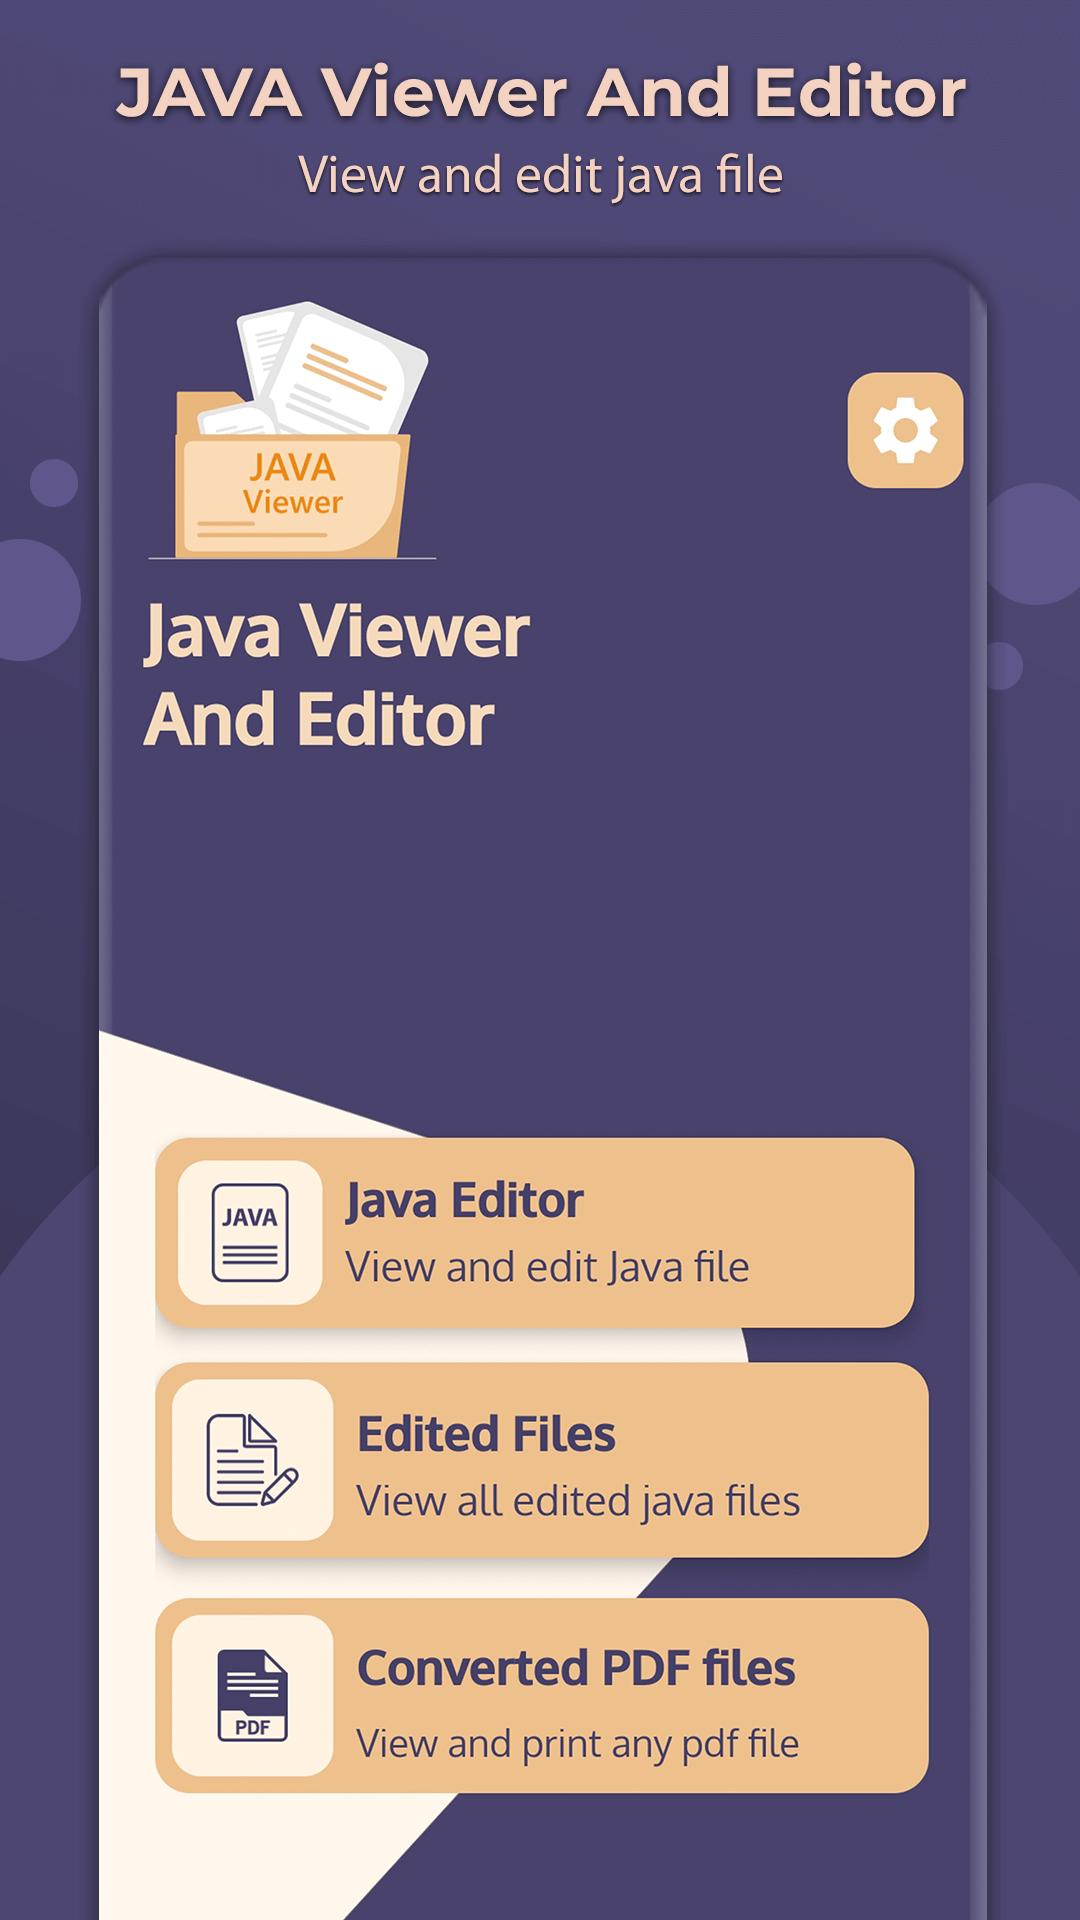 Java views